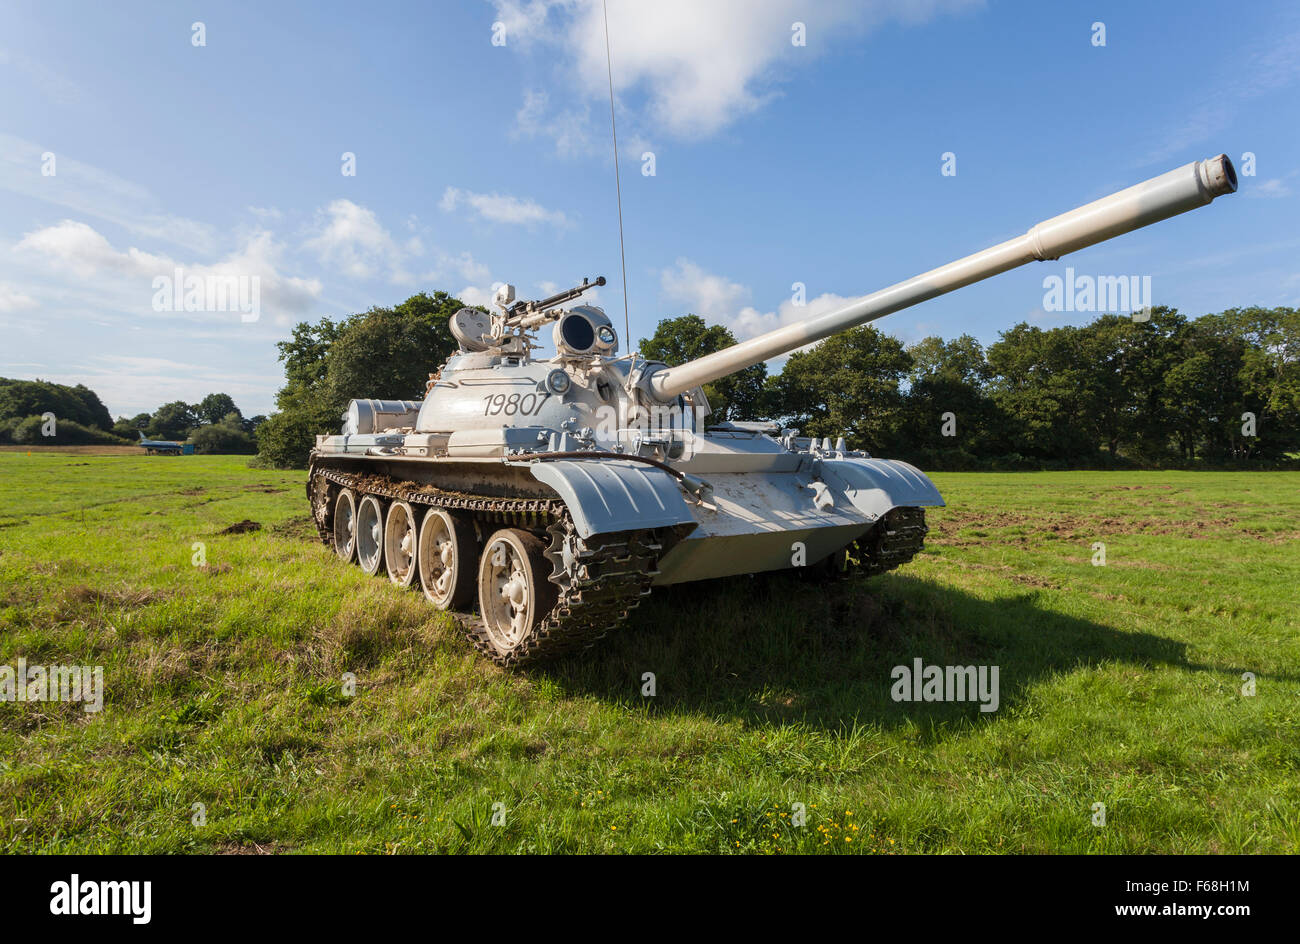 T55un tanque de batalla del ejército eslovaco, ex reserva en el ejército peruano, la combinación de colores en la pantalla para juegos en una pantalla de seguimiento de vuelo Foto de stock